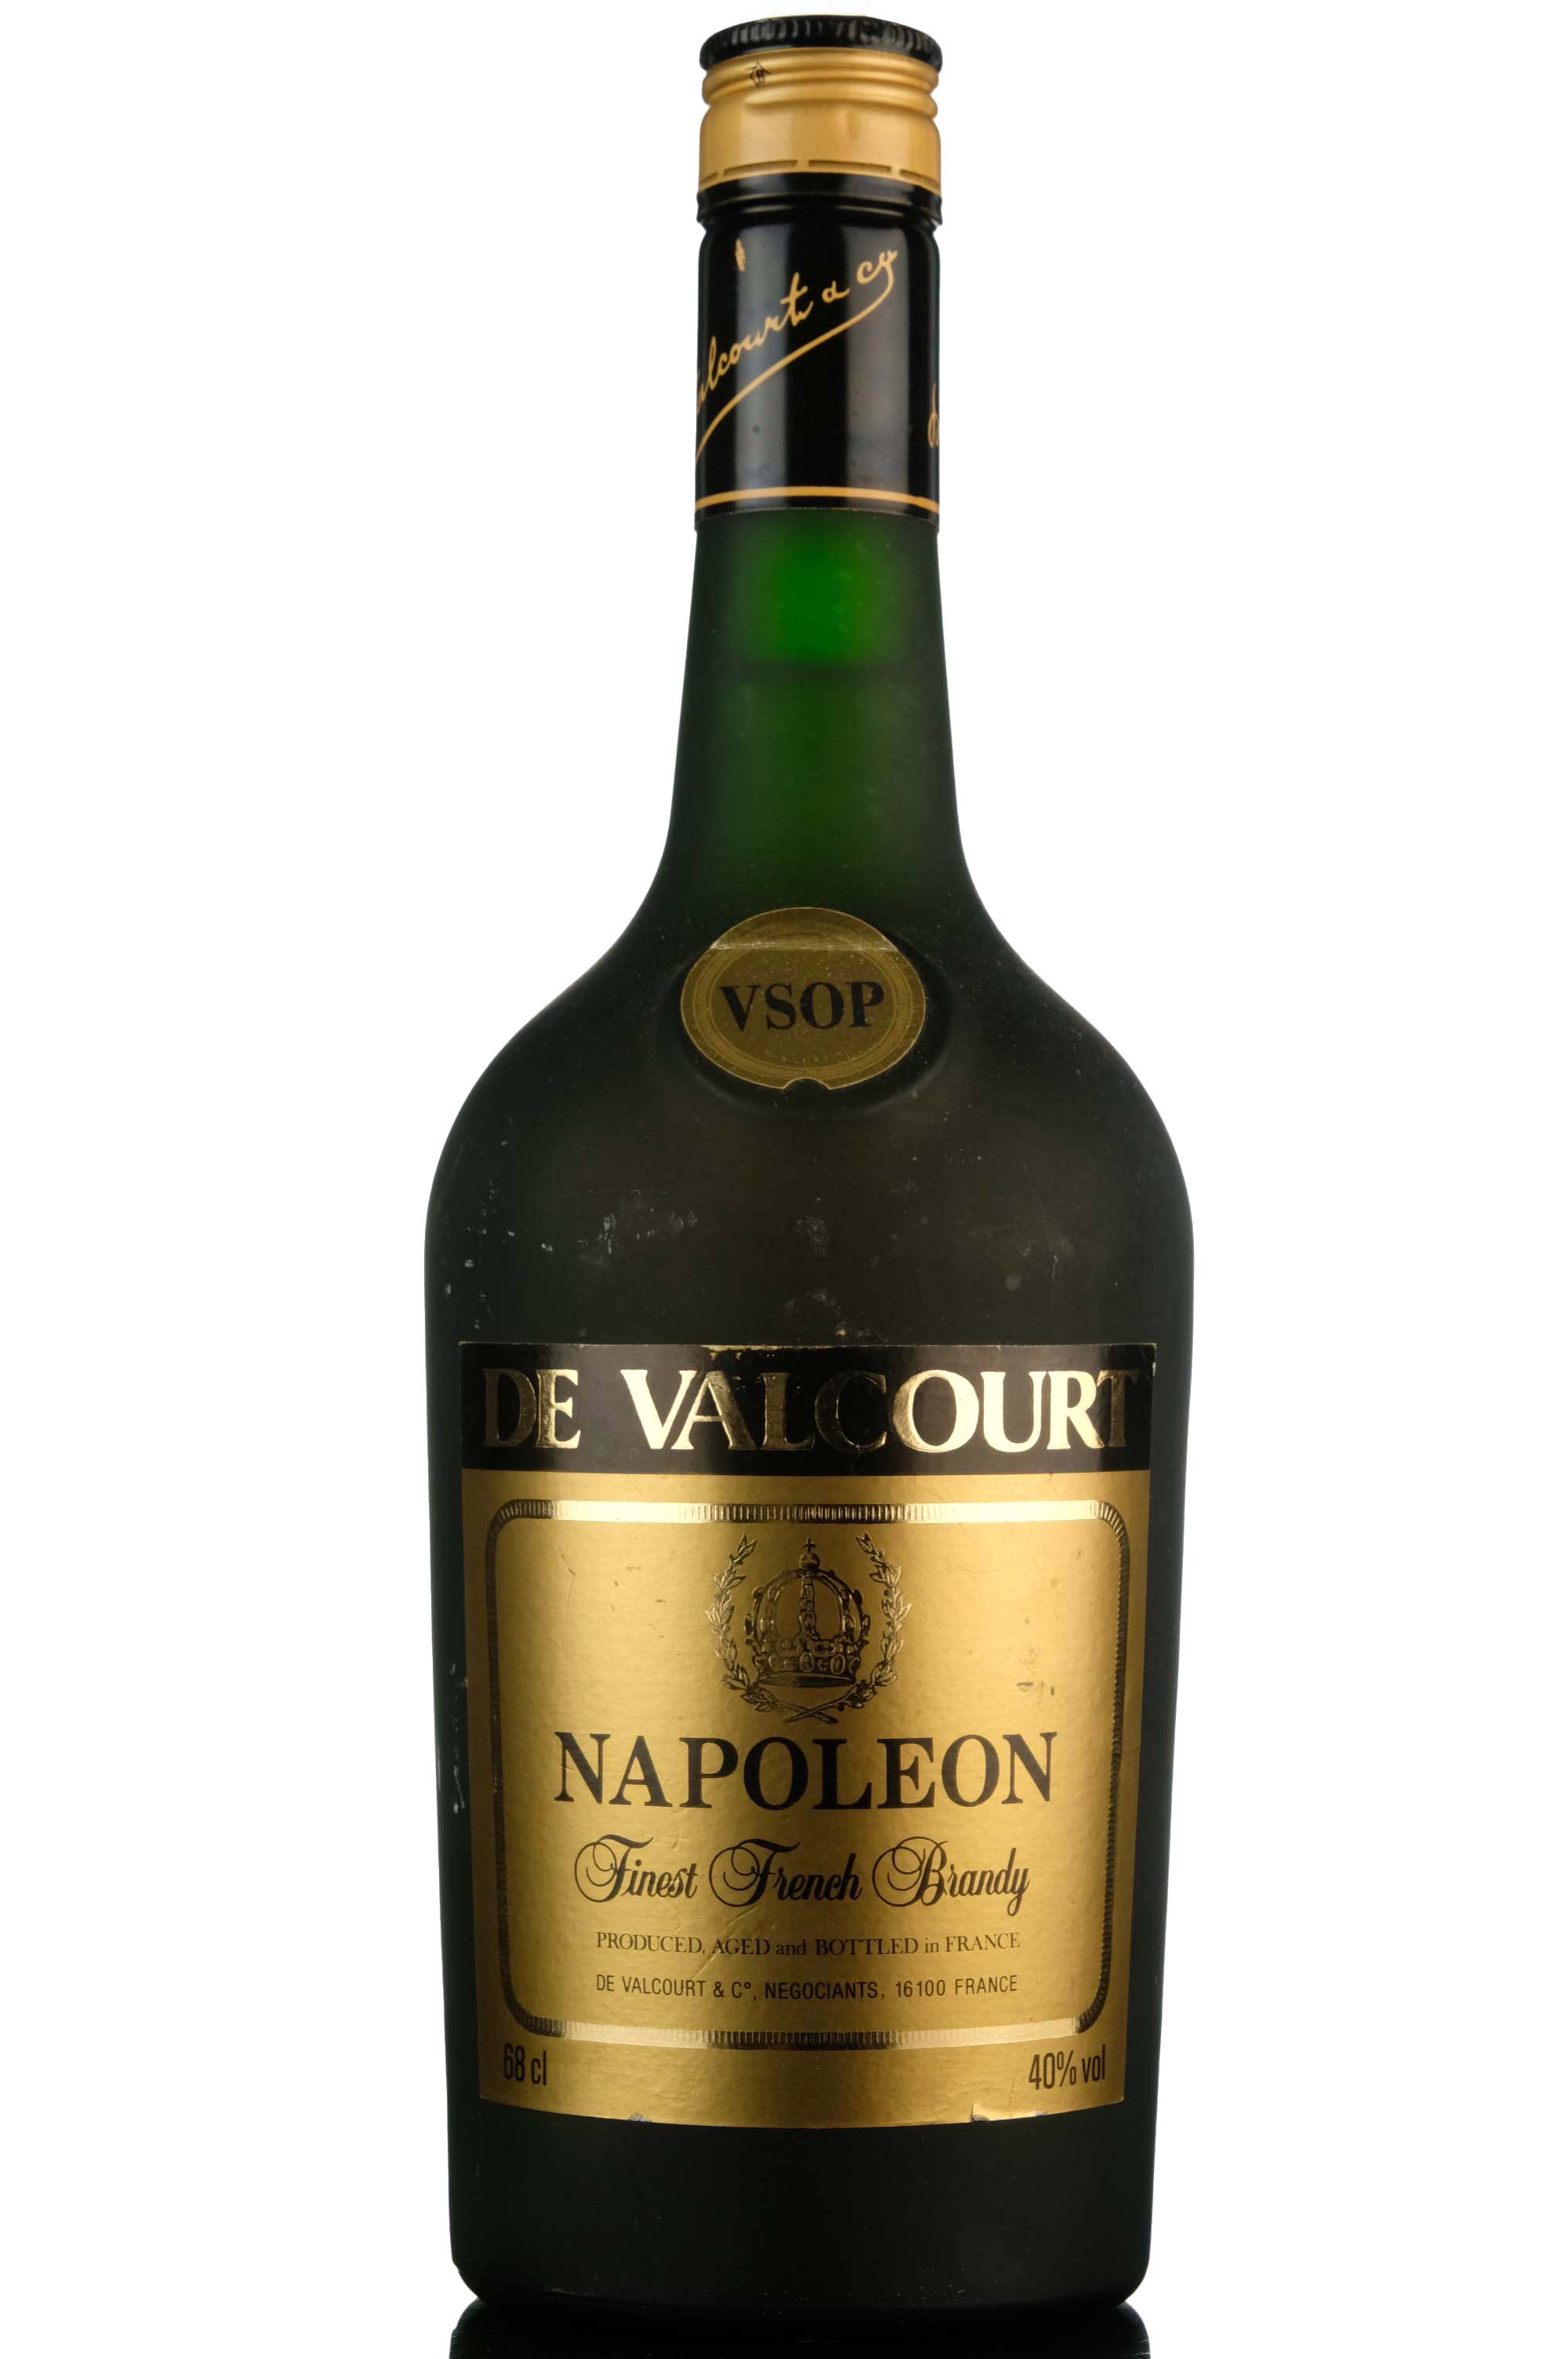 De Valcourt VSOP Napoleon Brandy